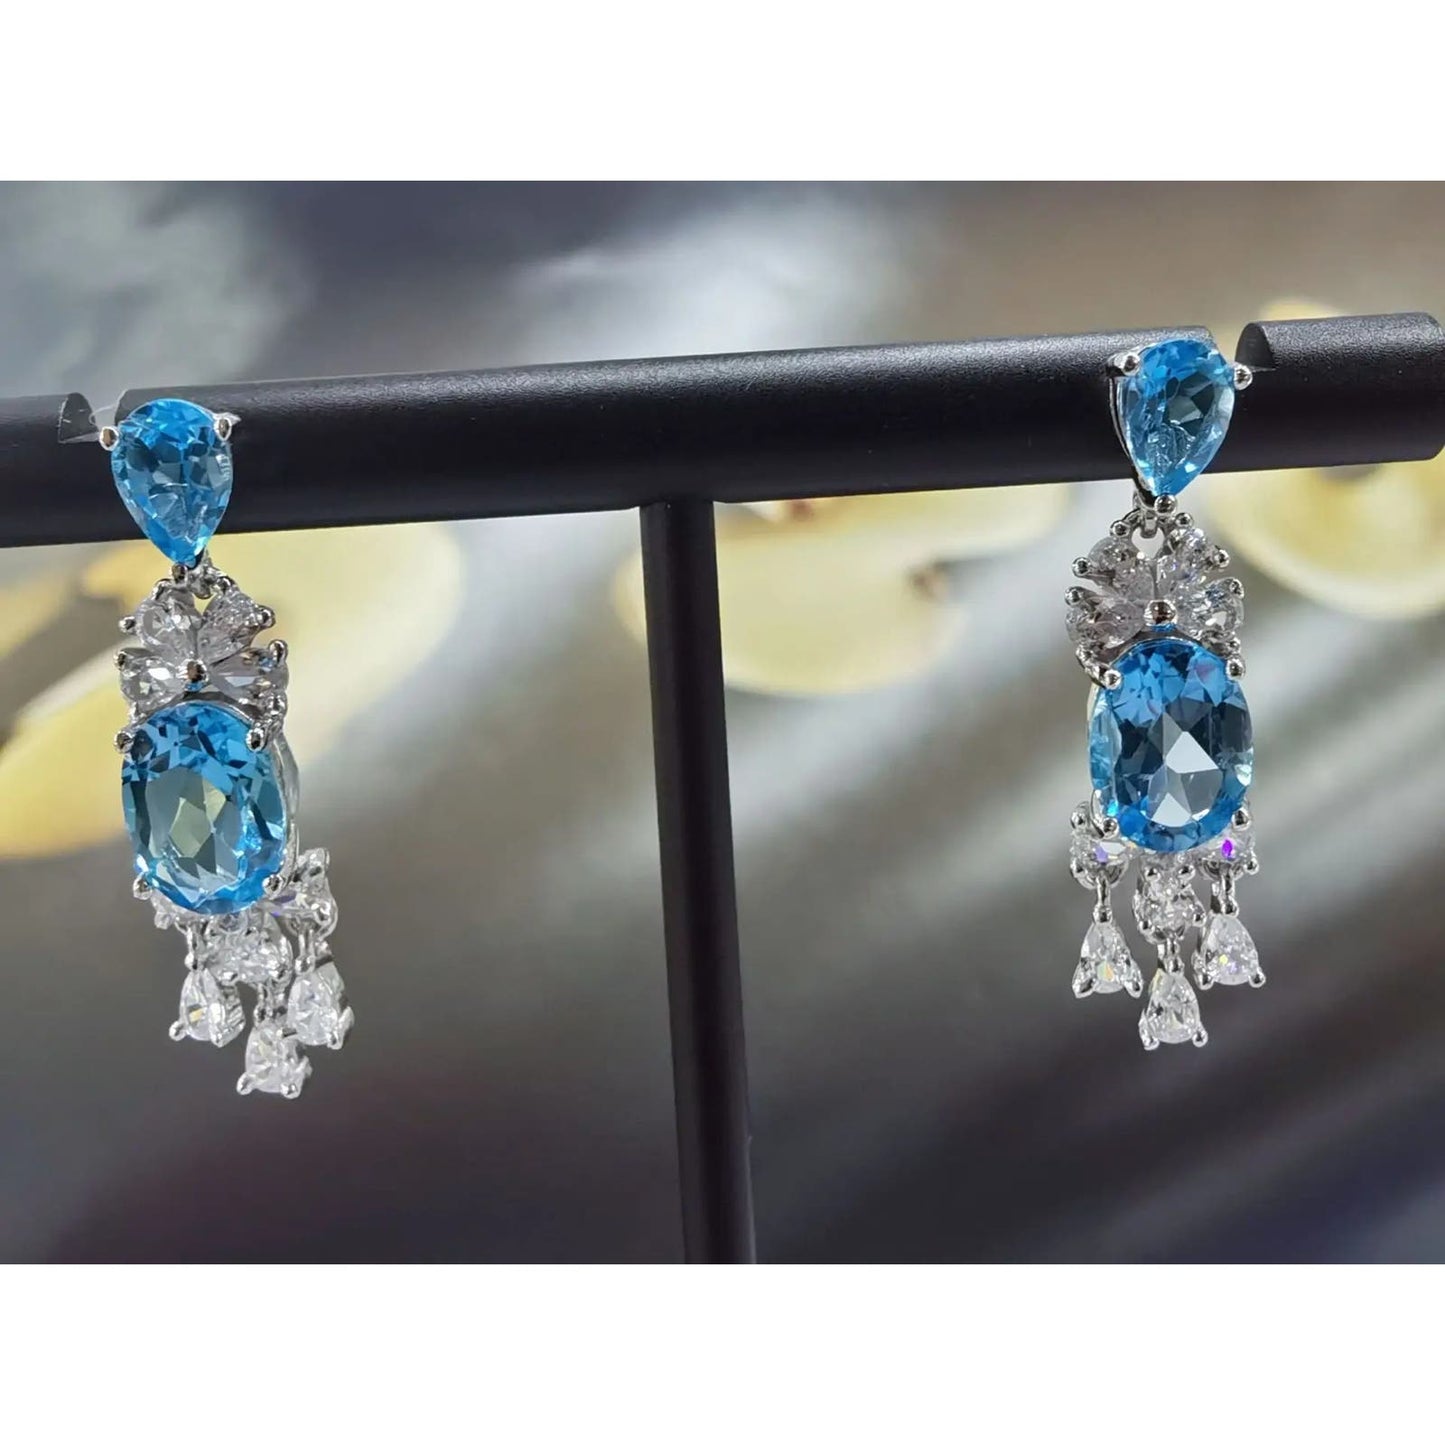 Swiss Blue Topaz Gemstone Dangle Earrings 4x6mm